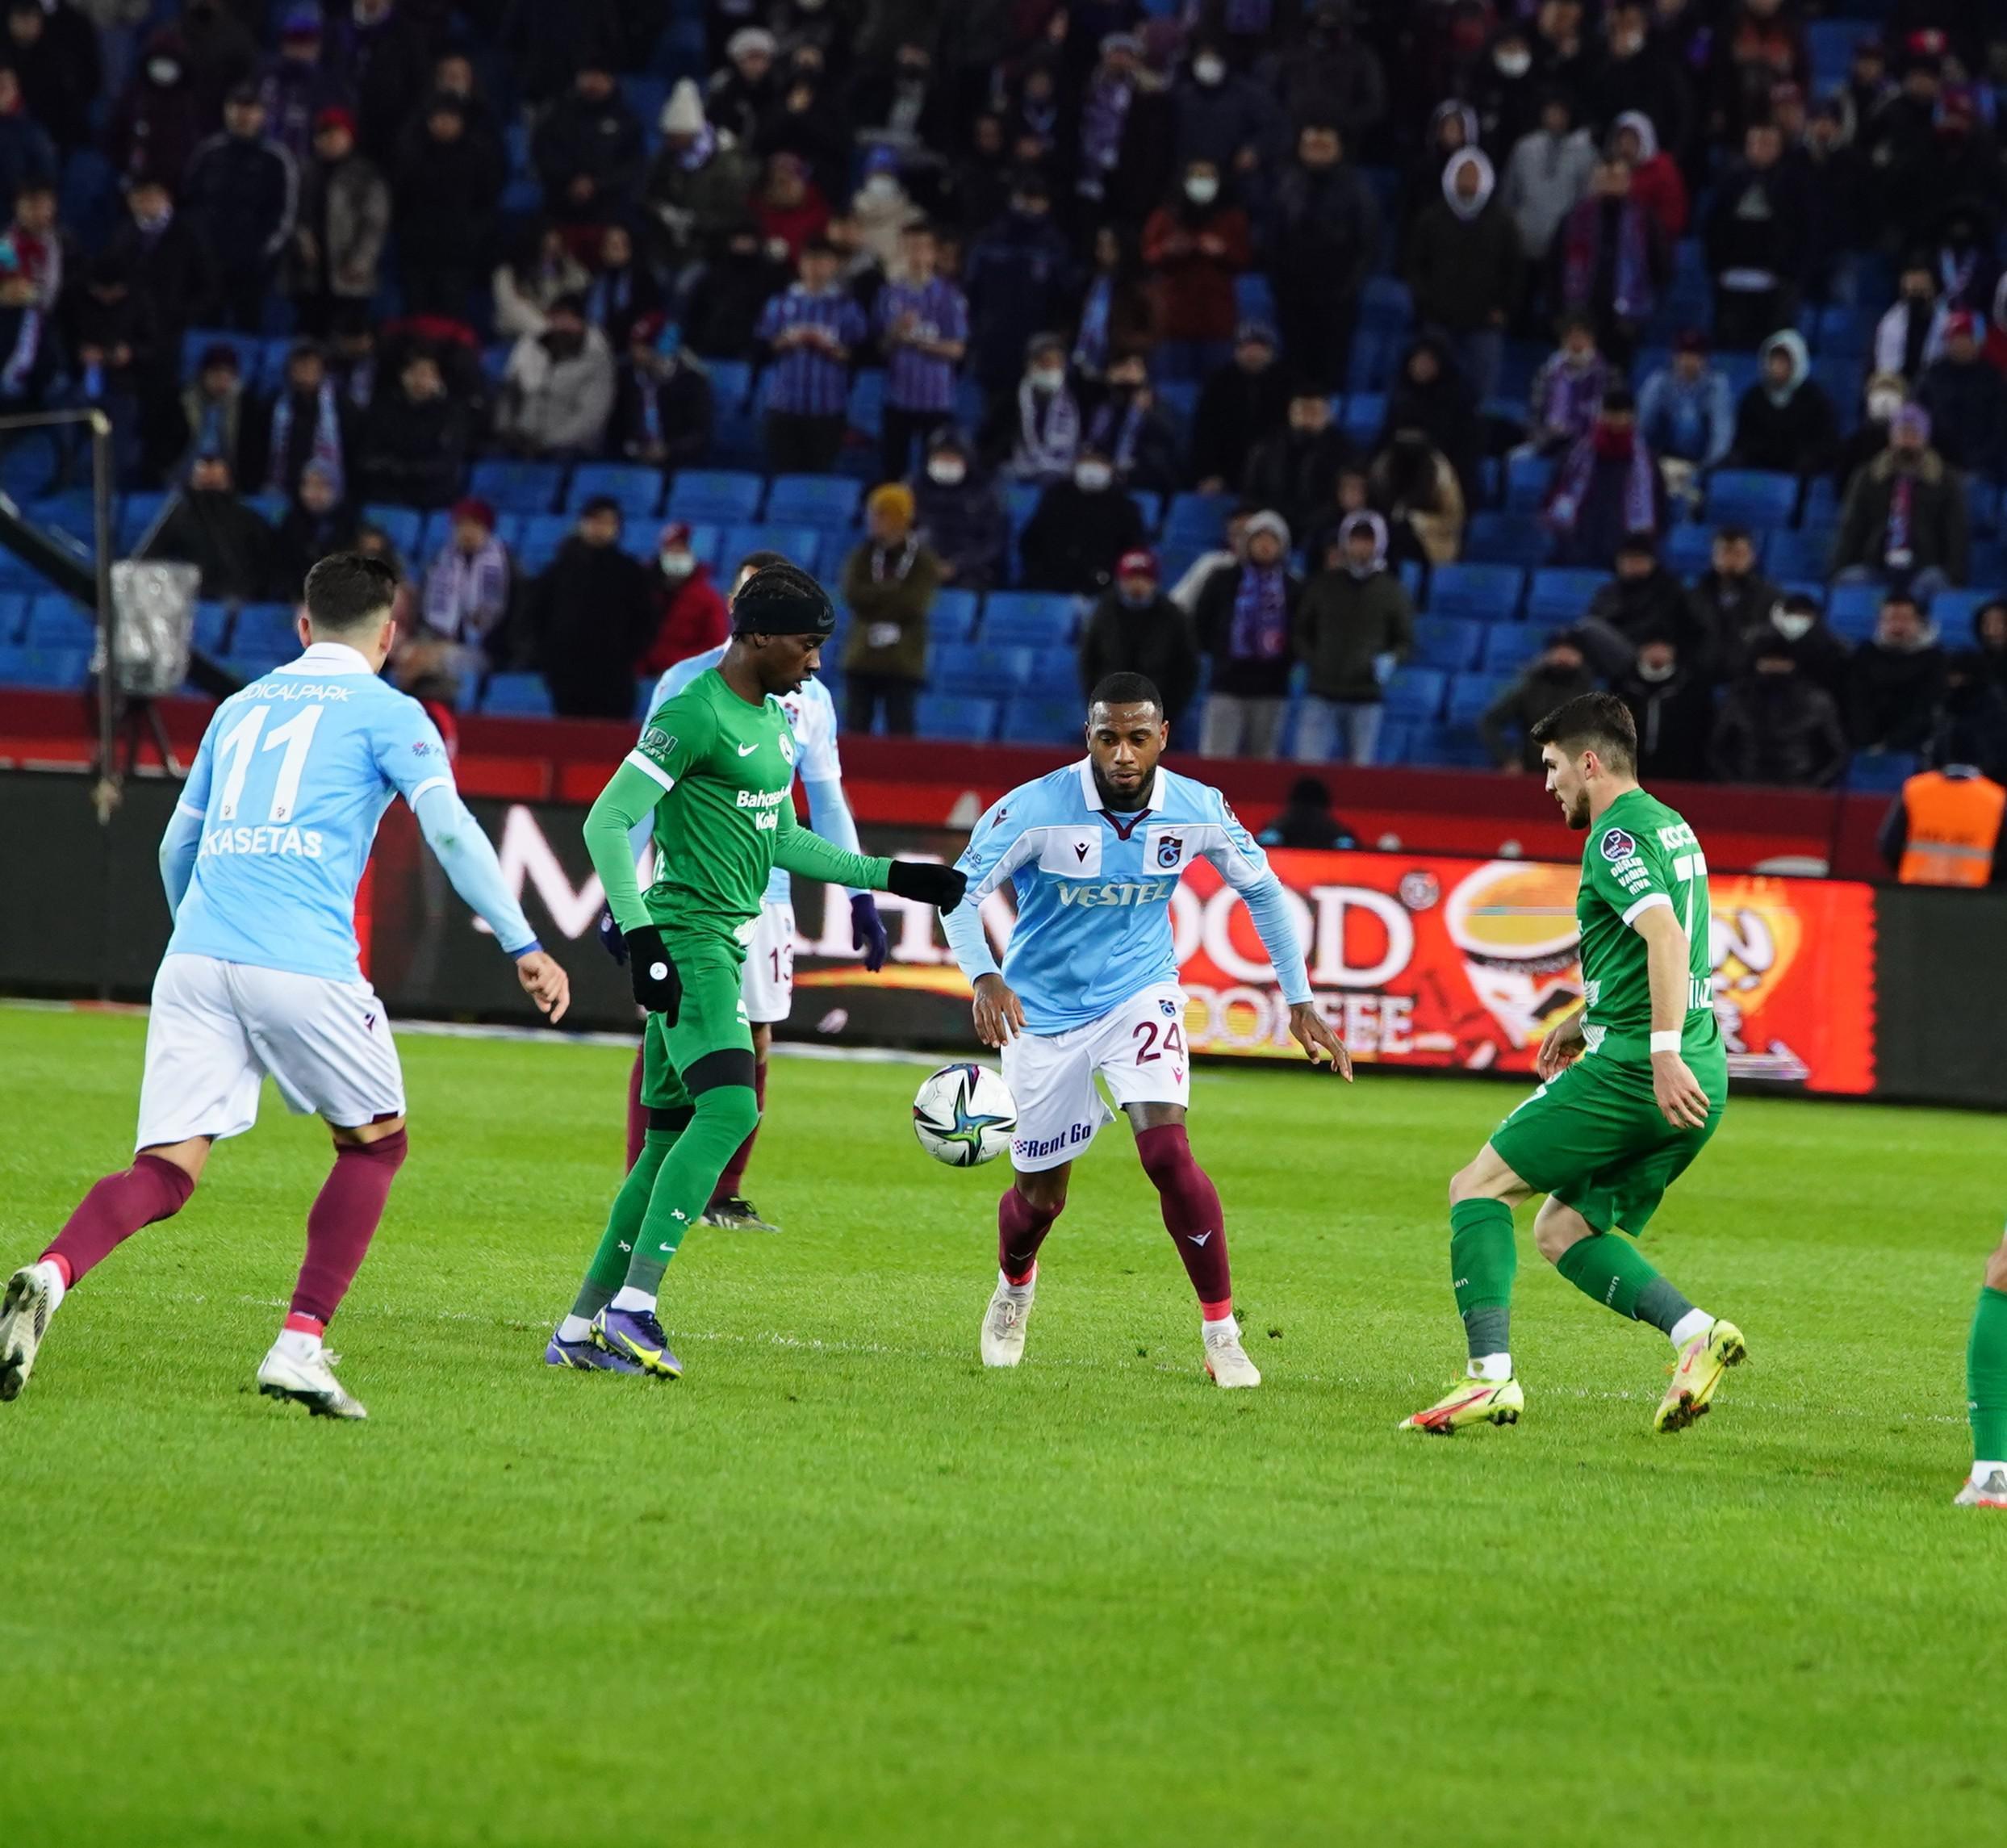 (ÖZET) Trabzonspor - Giresunspor maç sonucu: 1-1